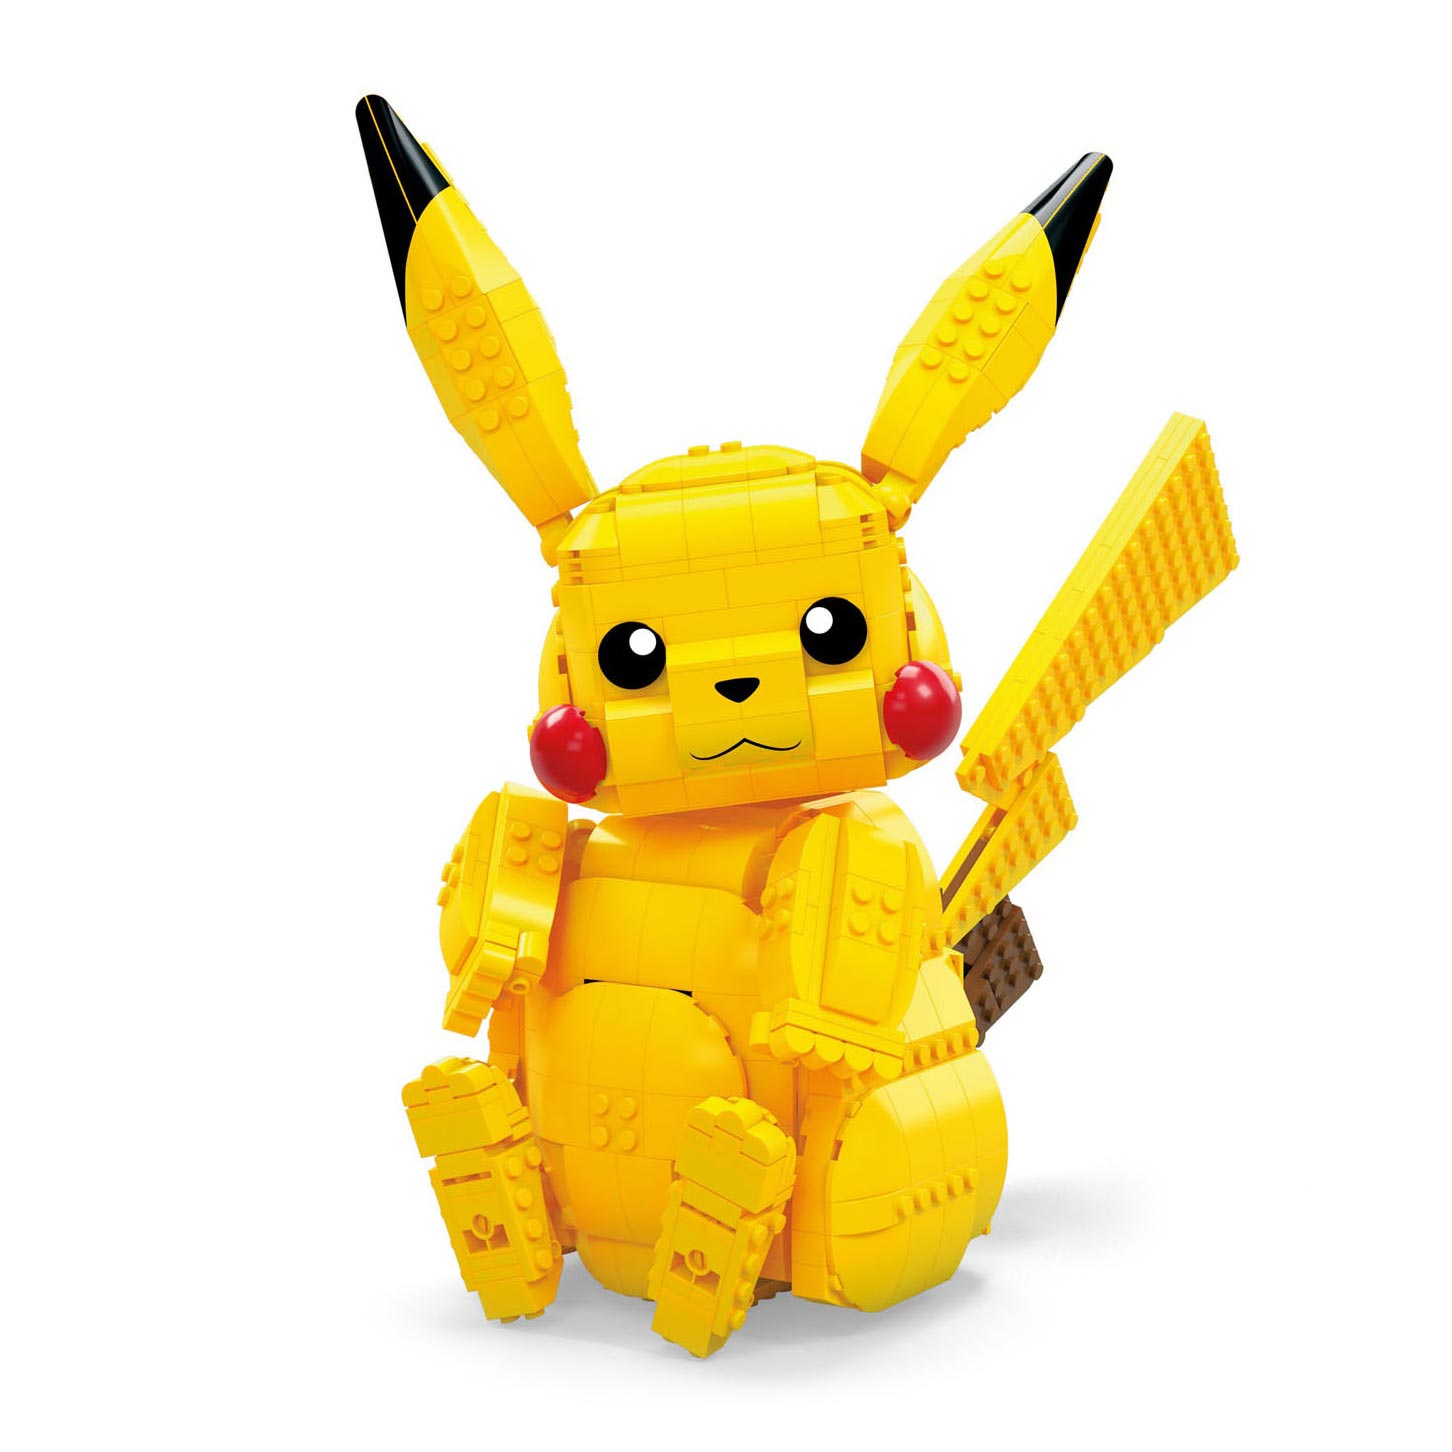 Mega construx Pokémon Motion Pikachu Construction Set Building Toys For  Kids And Collectors Yellow